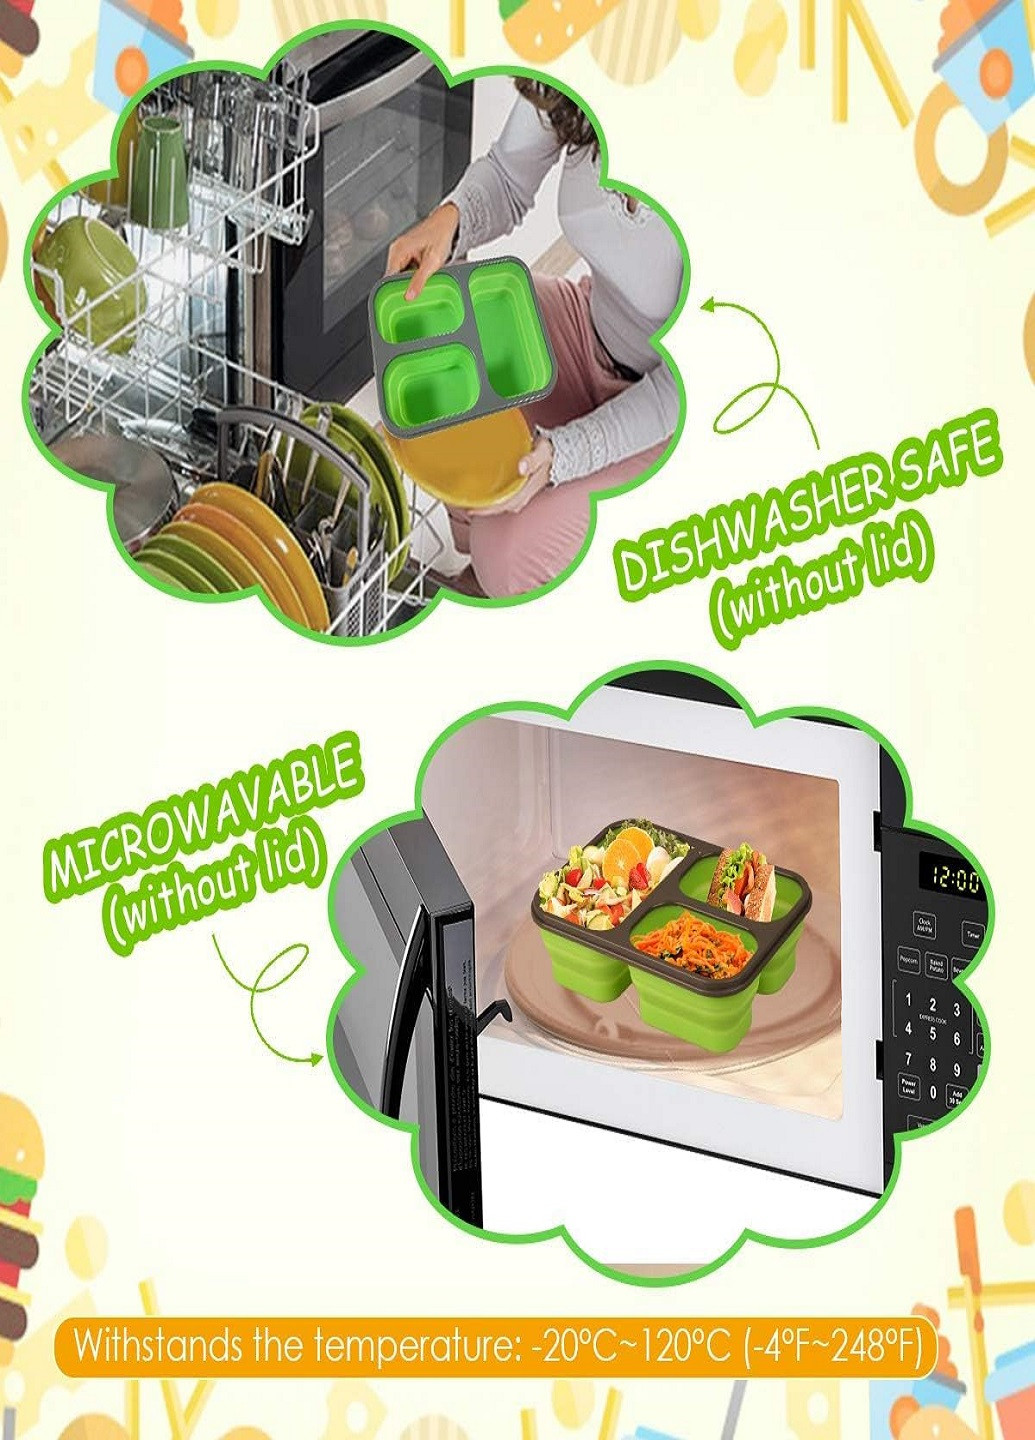 Универсальный складной Ланч Бокс на 3 секции со столовым прибором collapsible silicone lunch box Зеленый VTech (260088254)